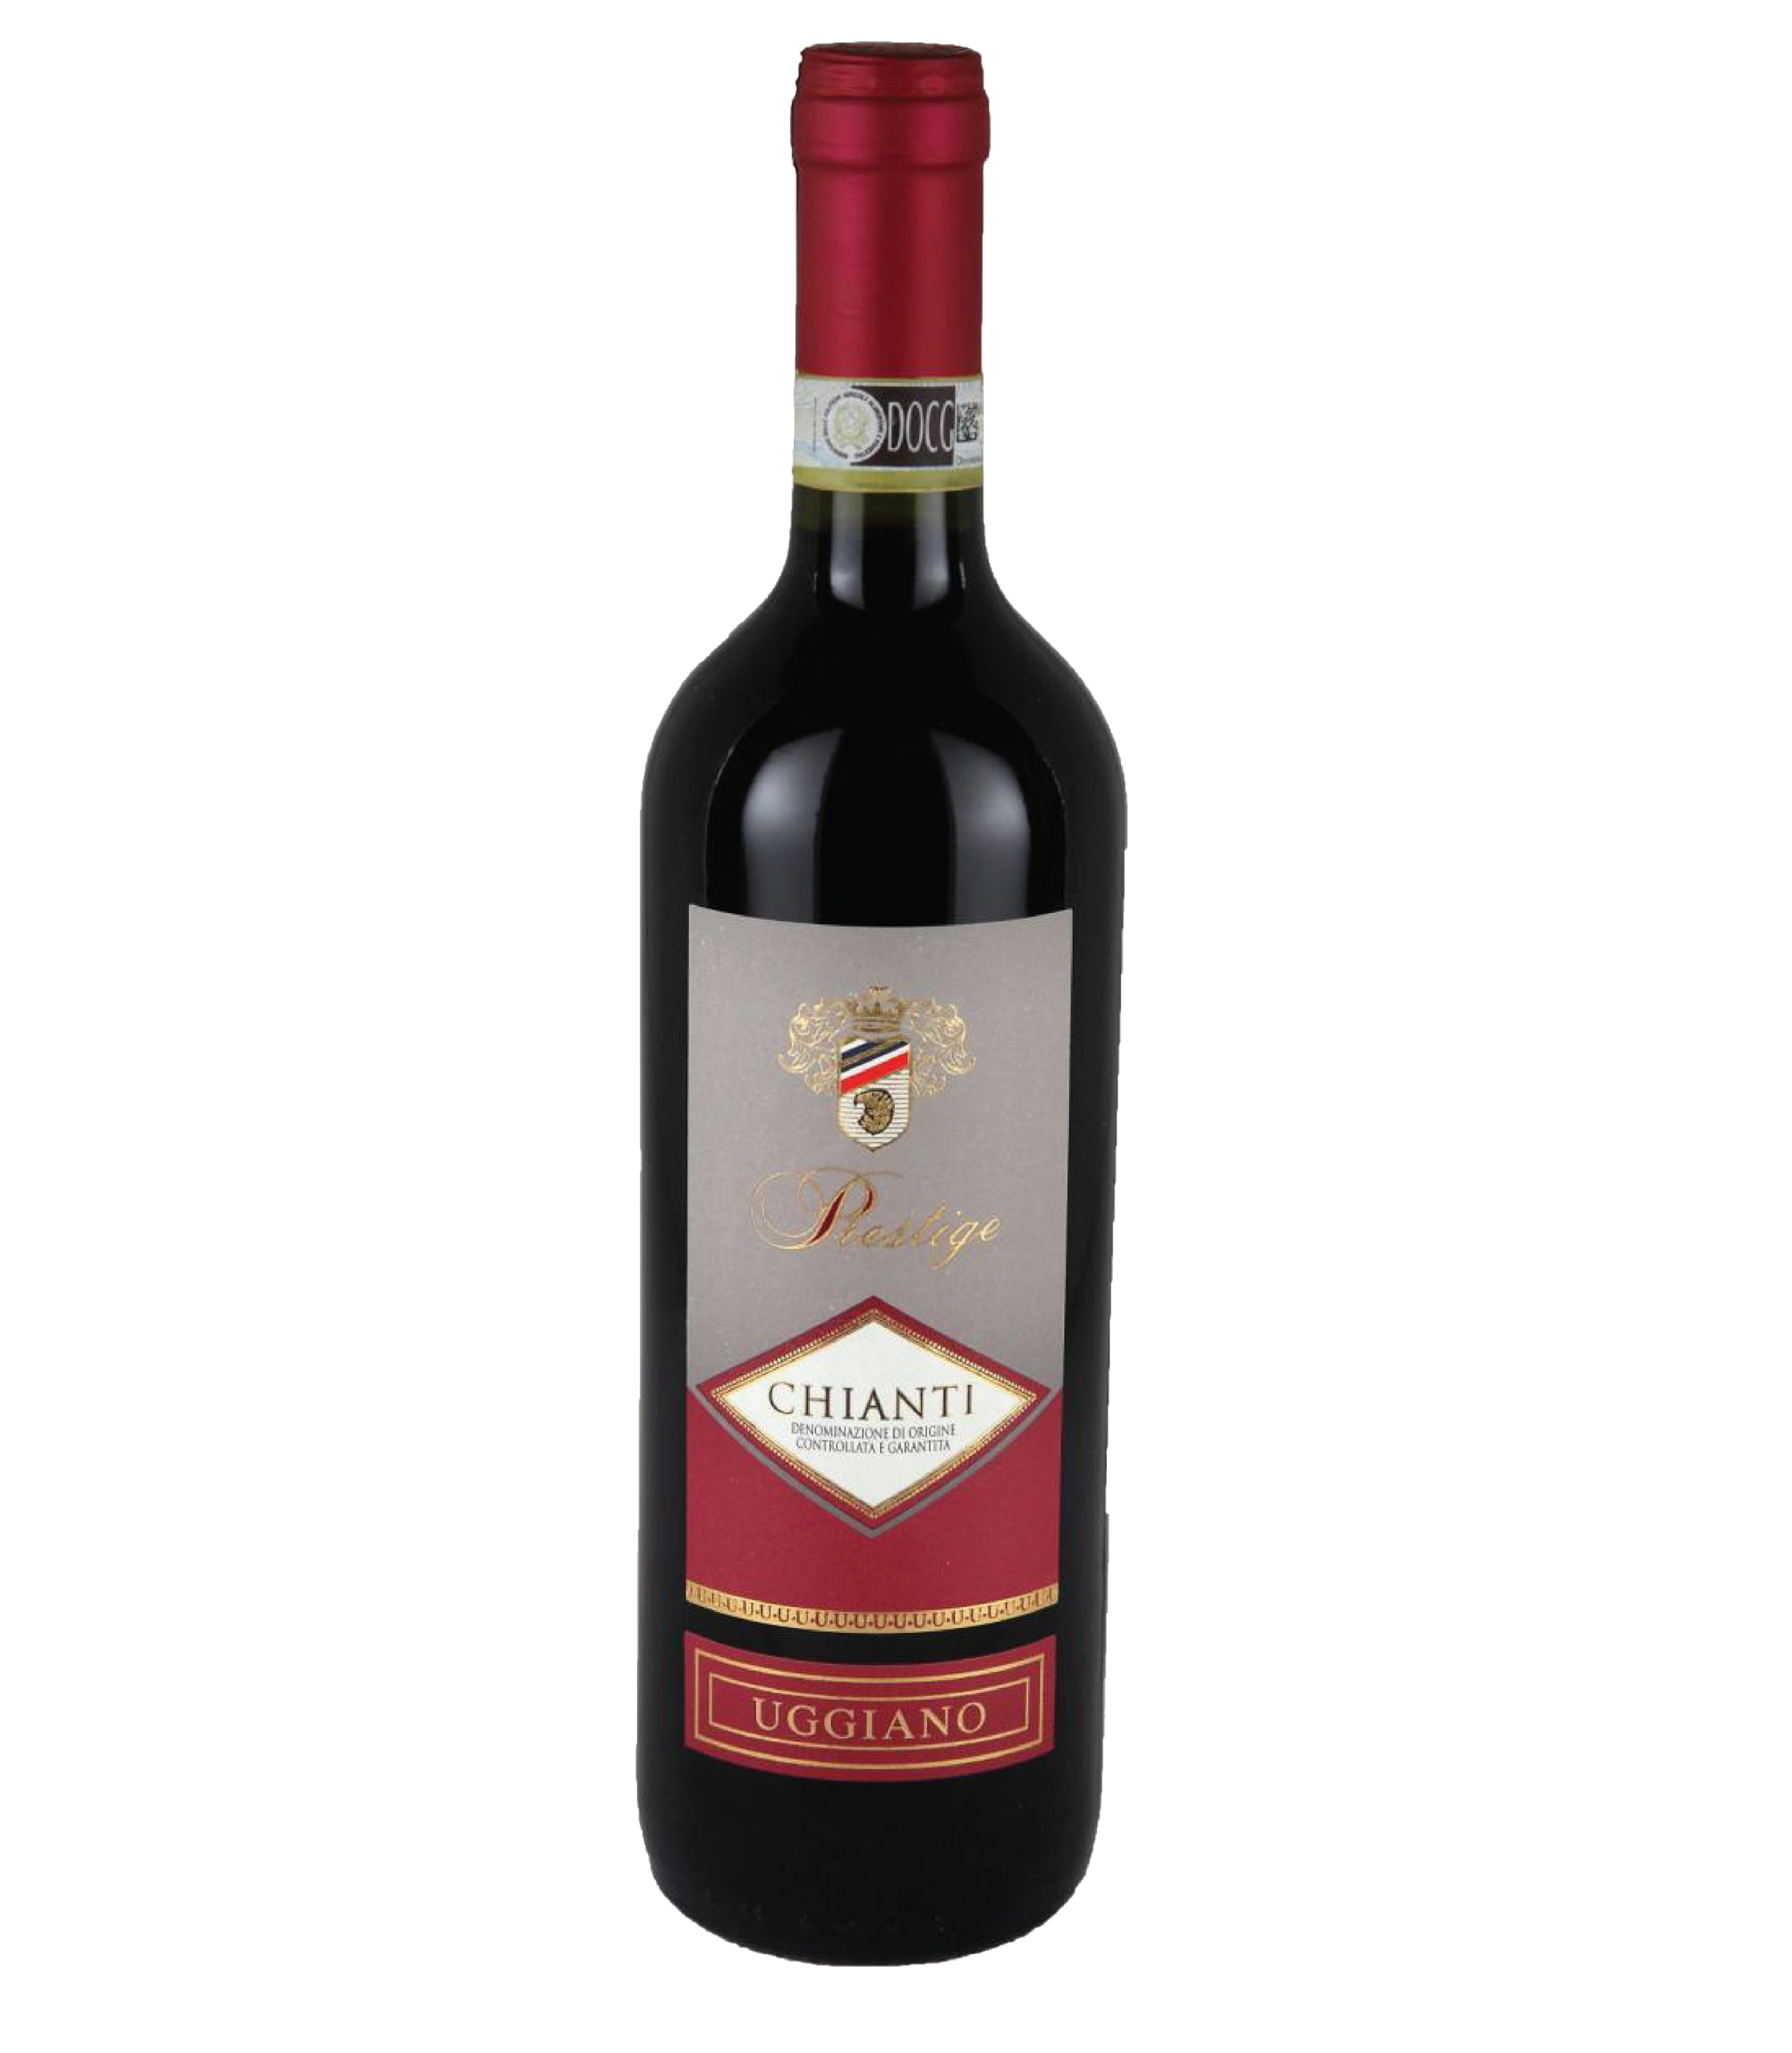 Вино кьянти резерва красное сухое. Chianti DOCG вино красное сухое. Вино Chianti Uggiano красное. Кьянти Престиж. Вино Кьянти ДОКГ красное сухое.